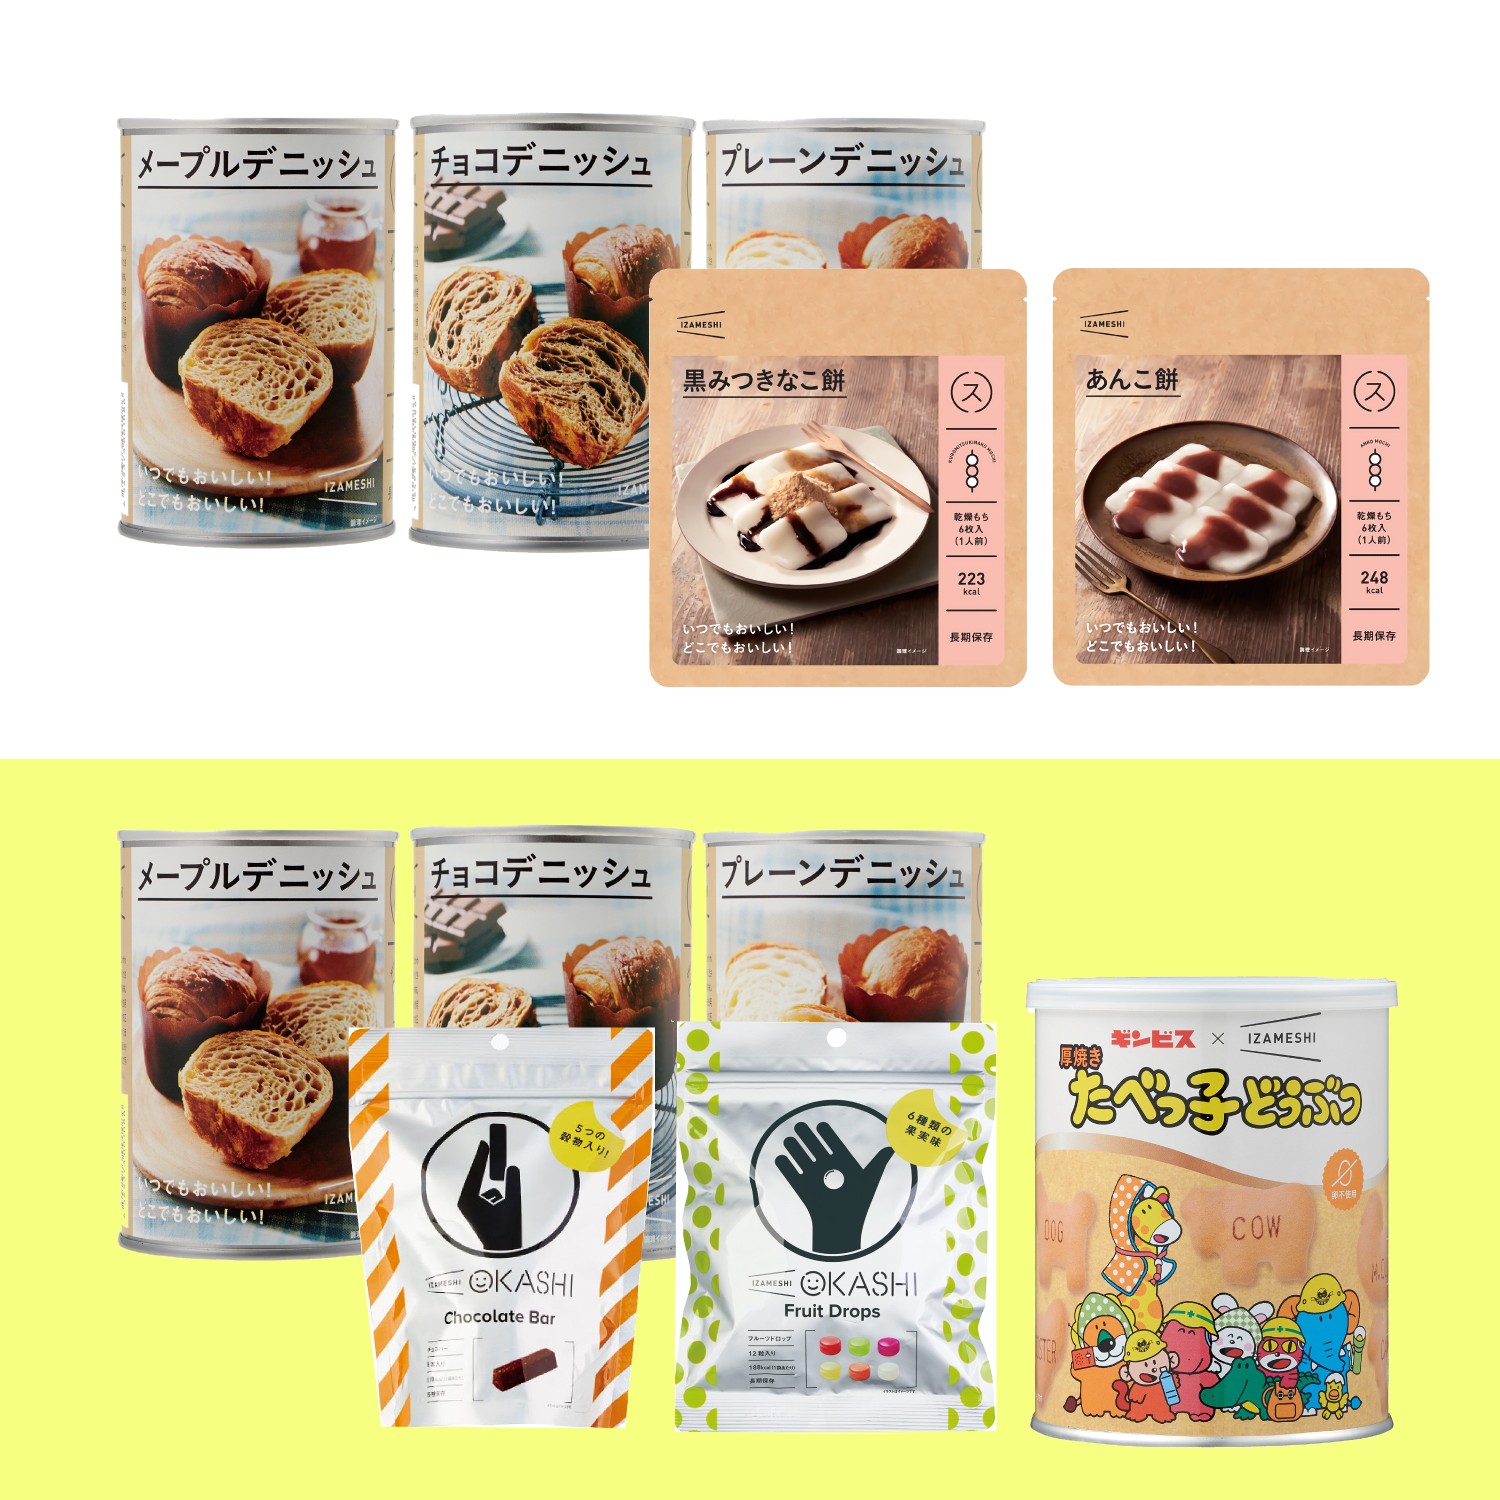 【イザメシ/IZAMESHI】非常食 糖分補給 スイーツ・パンセット 3年保存可能 Aセット/Bセット